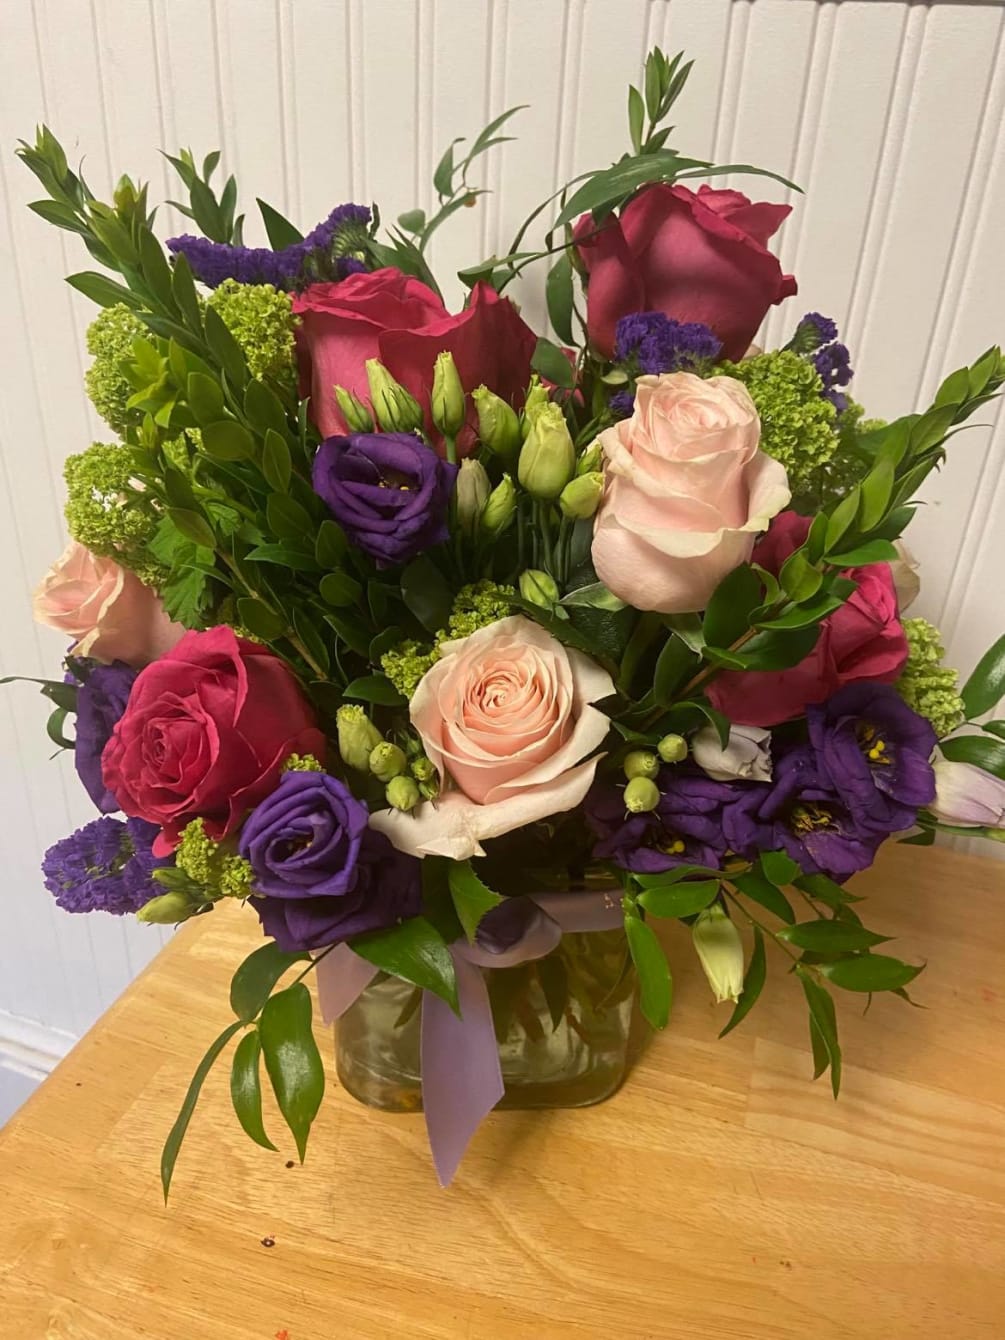 This arrangement includes Roses, Lisianthus, hydrangea